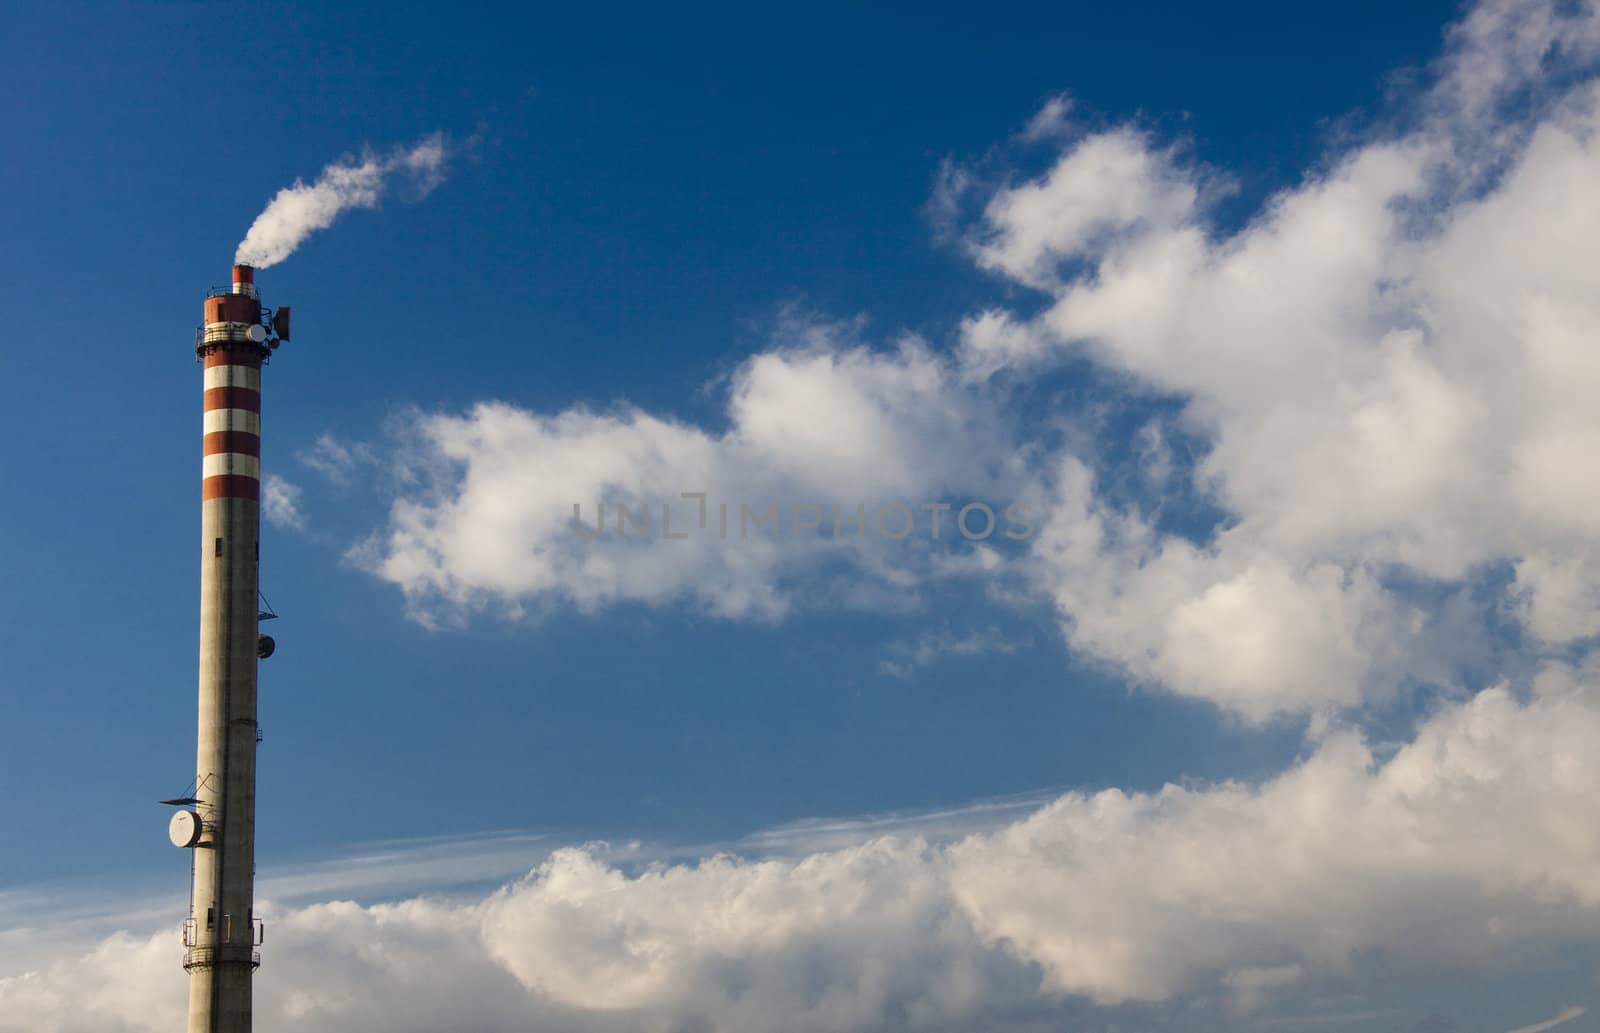 Chimney and blue sky by parys